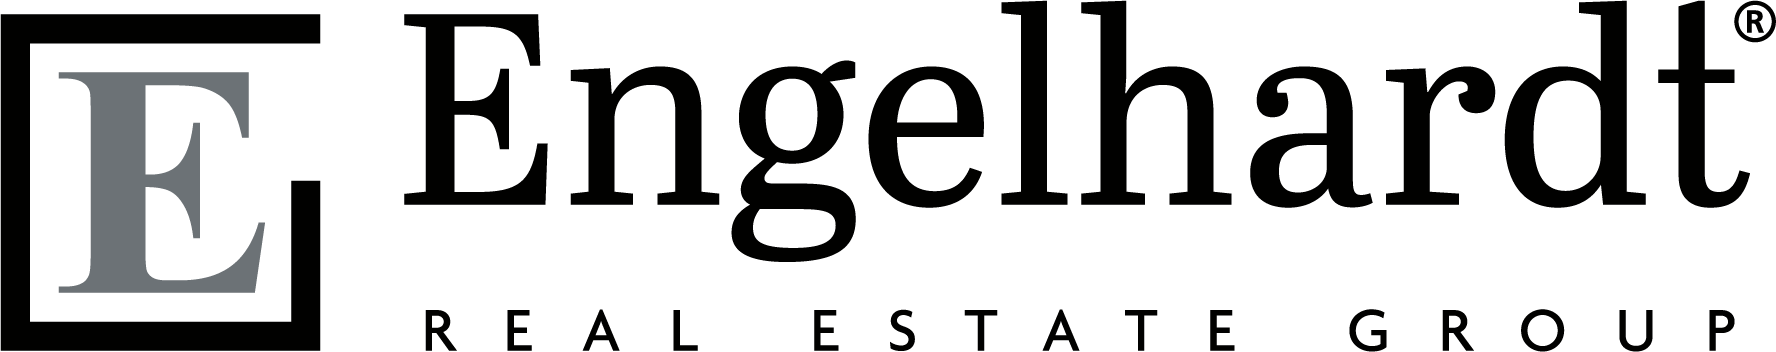 Engelhardt Group Logo